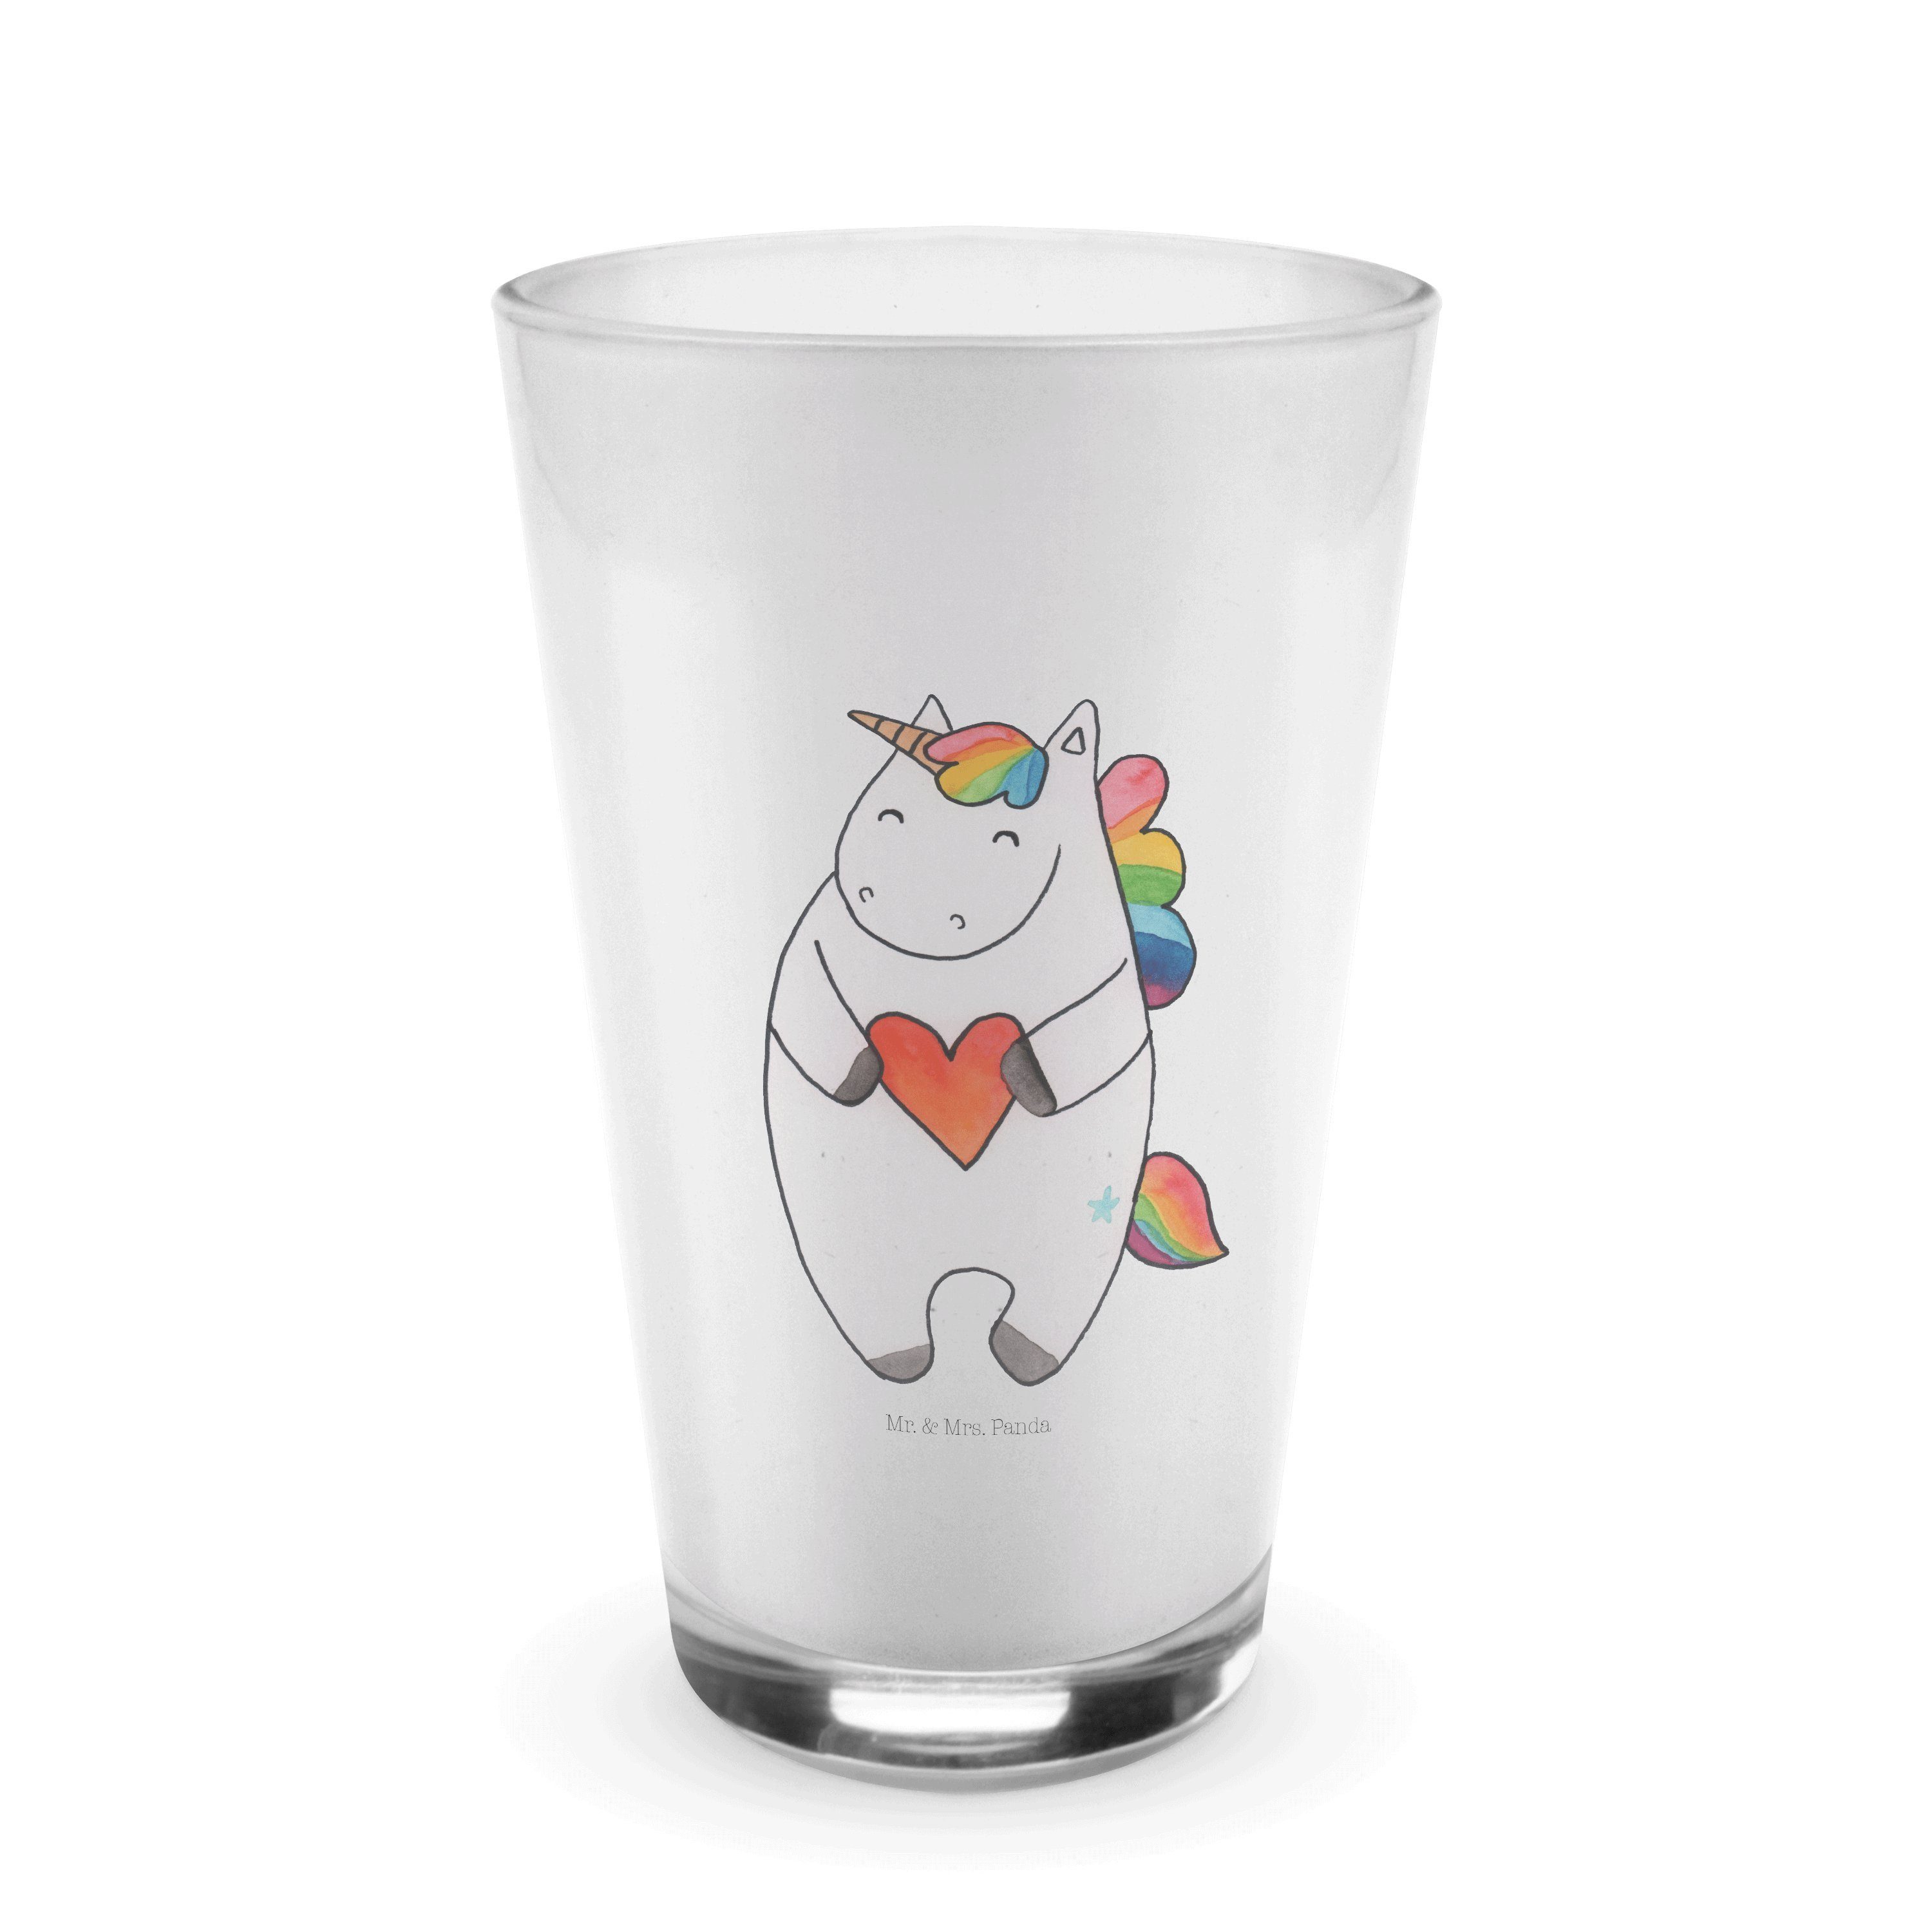 Mr. & Mrs. Panda Glas Einhorn Herz - Transparent - Geschenk, böse, Glas, Einhorn Deko, Einh, Premium Glas